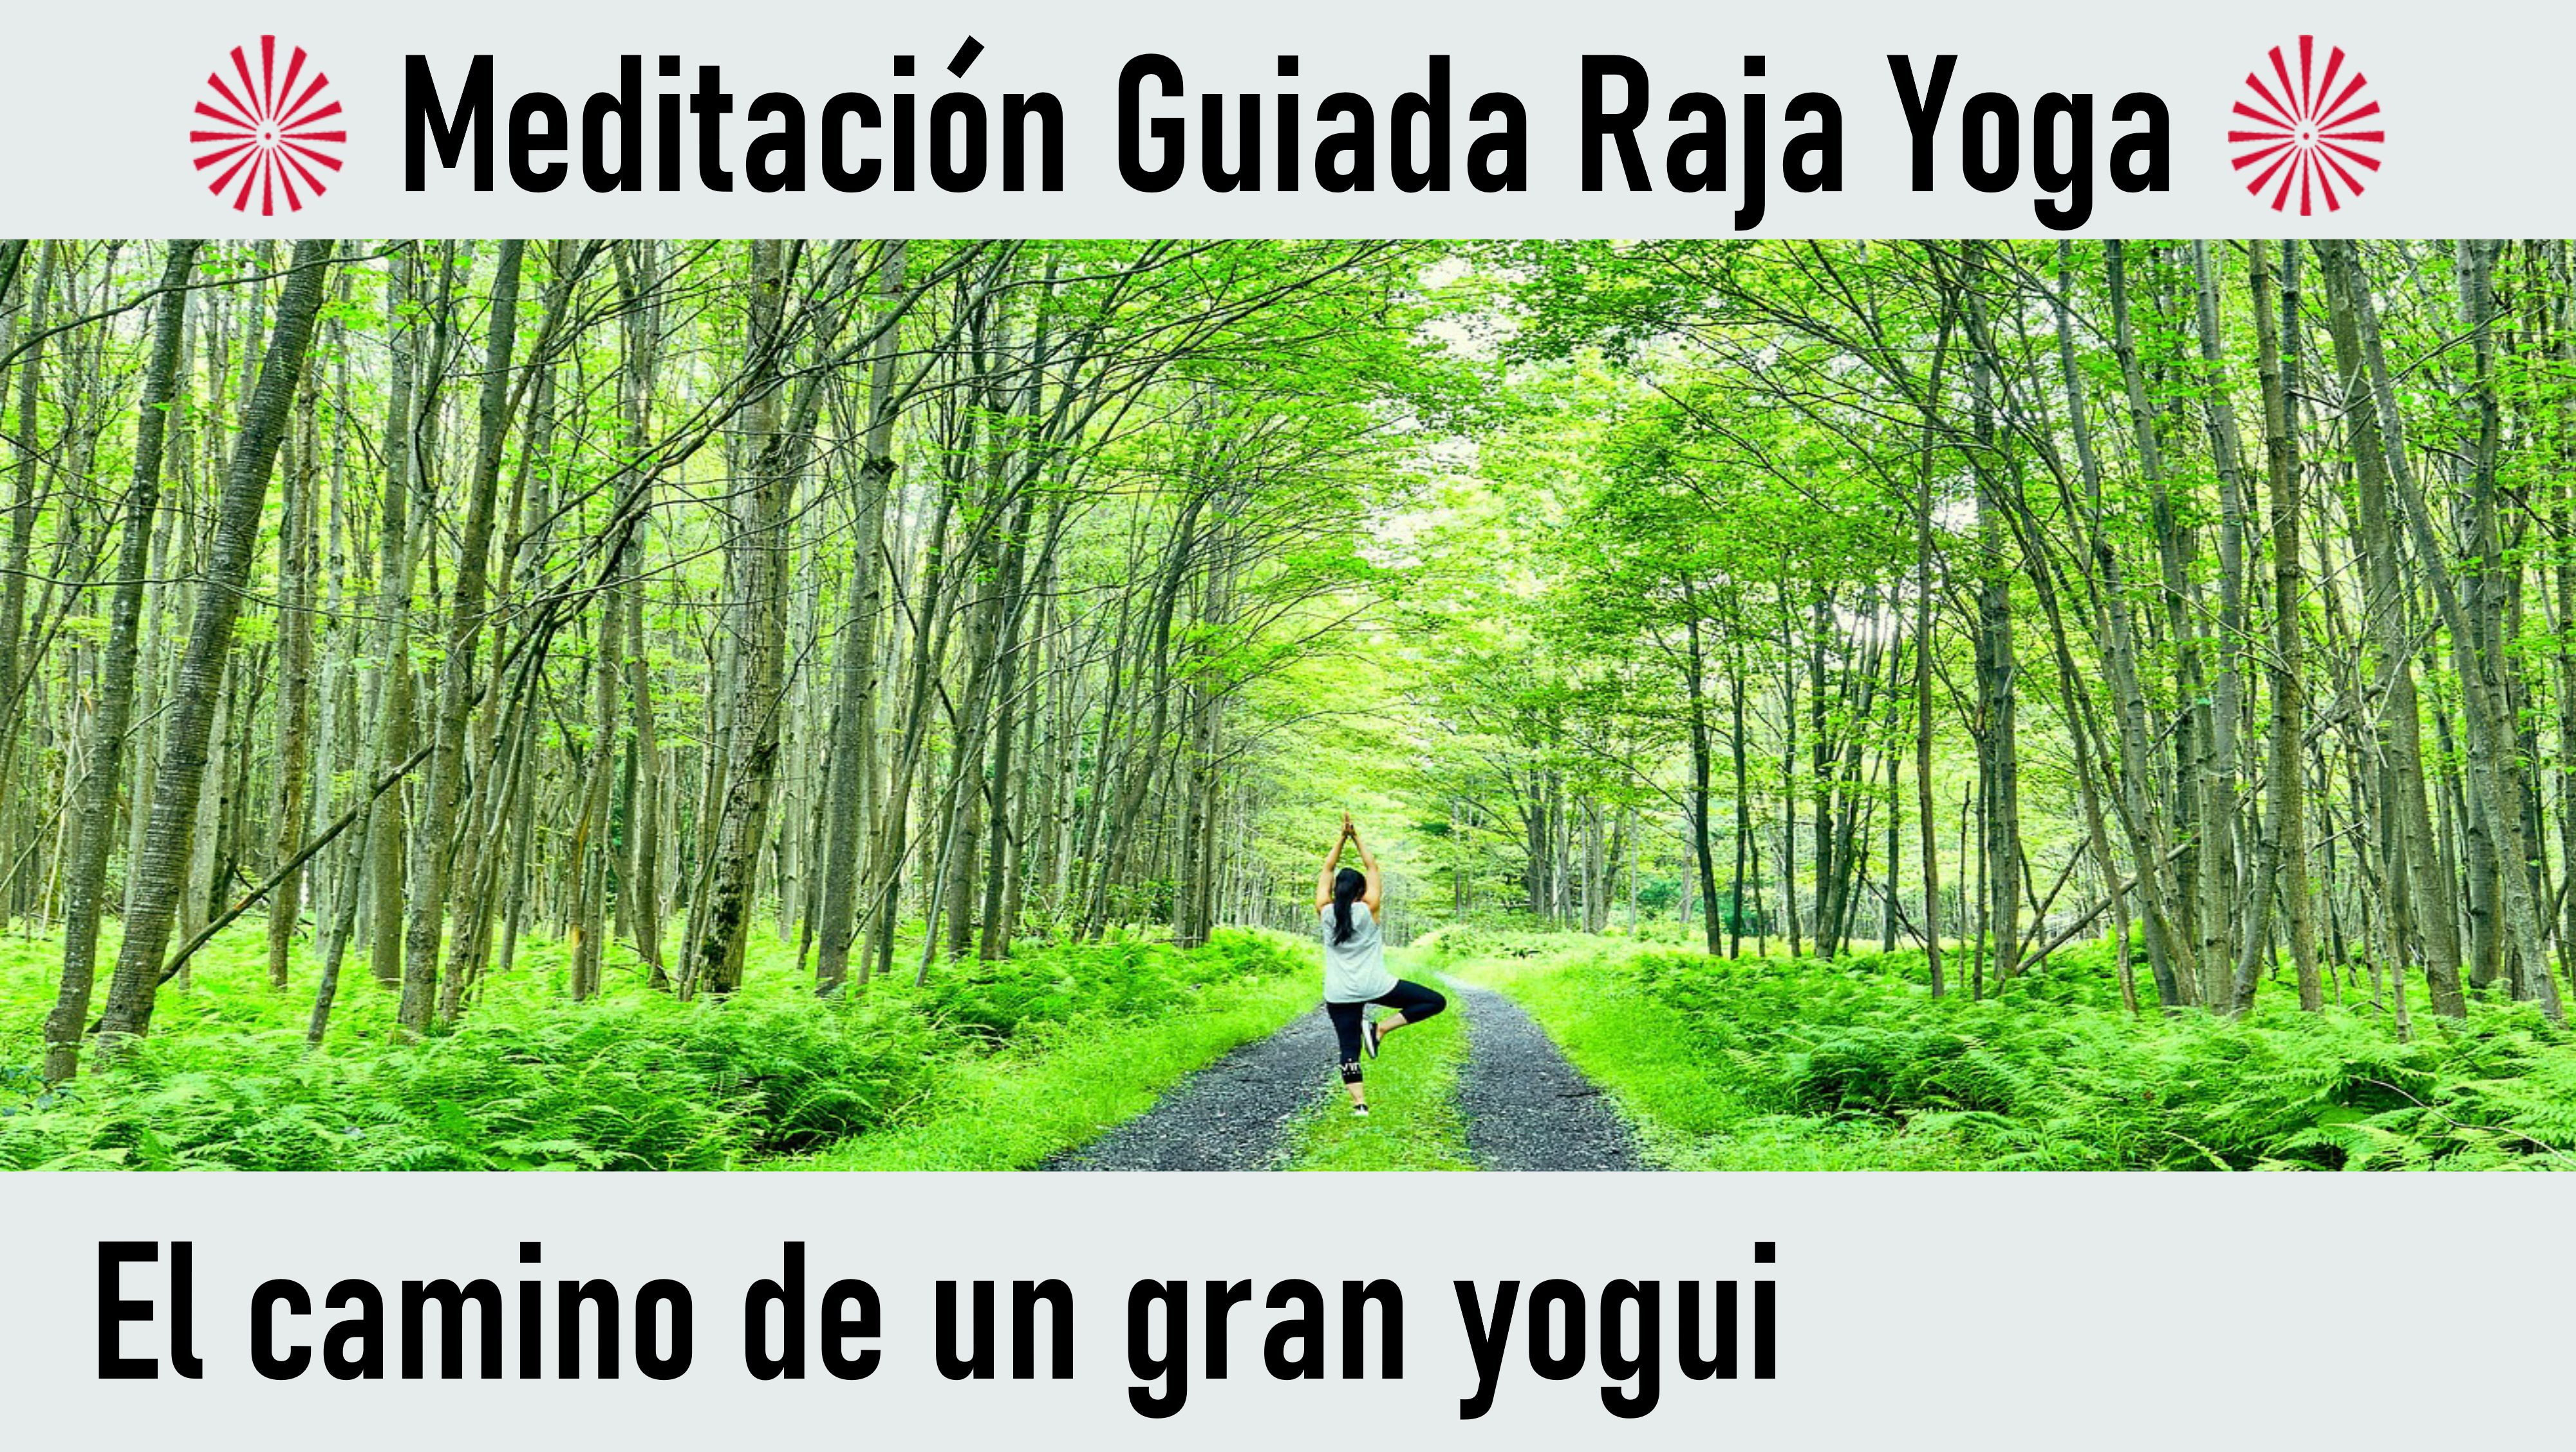 Meditación Raja Yoga: El camino de un gran yogui (8 Septiembre 2020) On-line desde Canarias